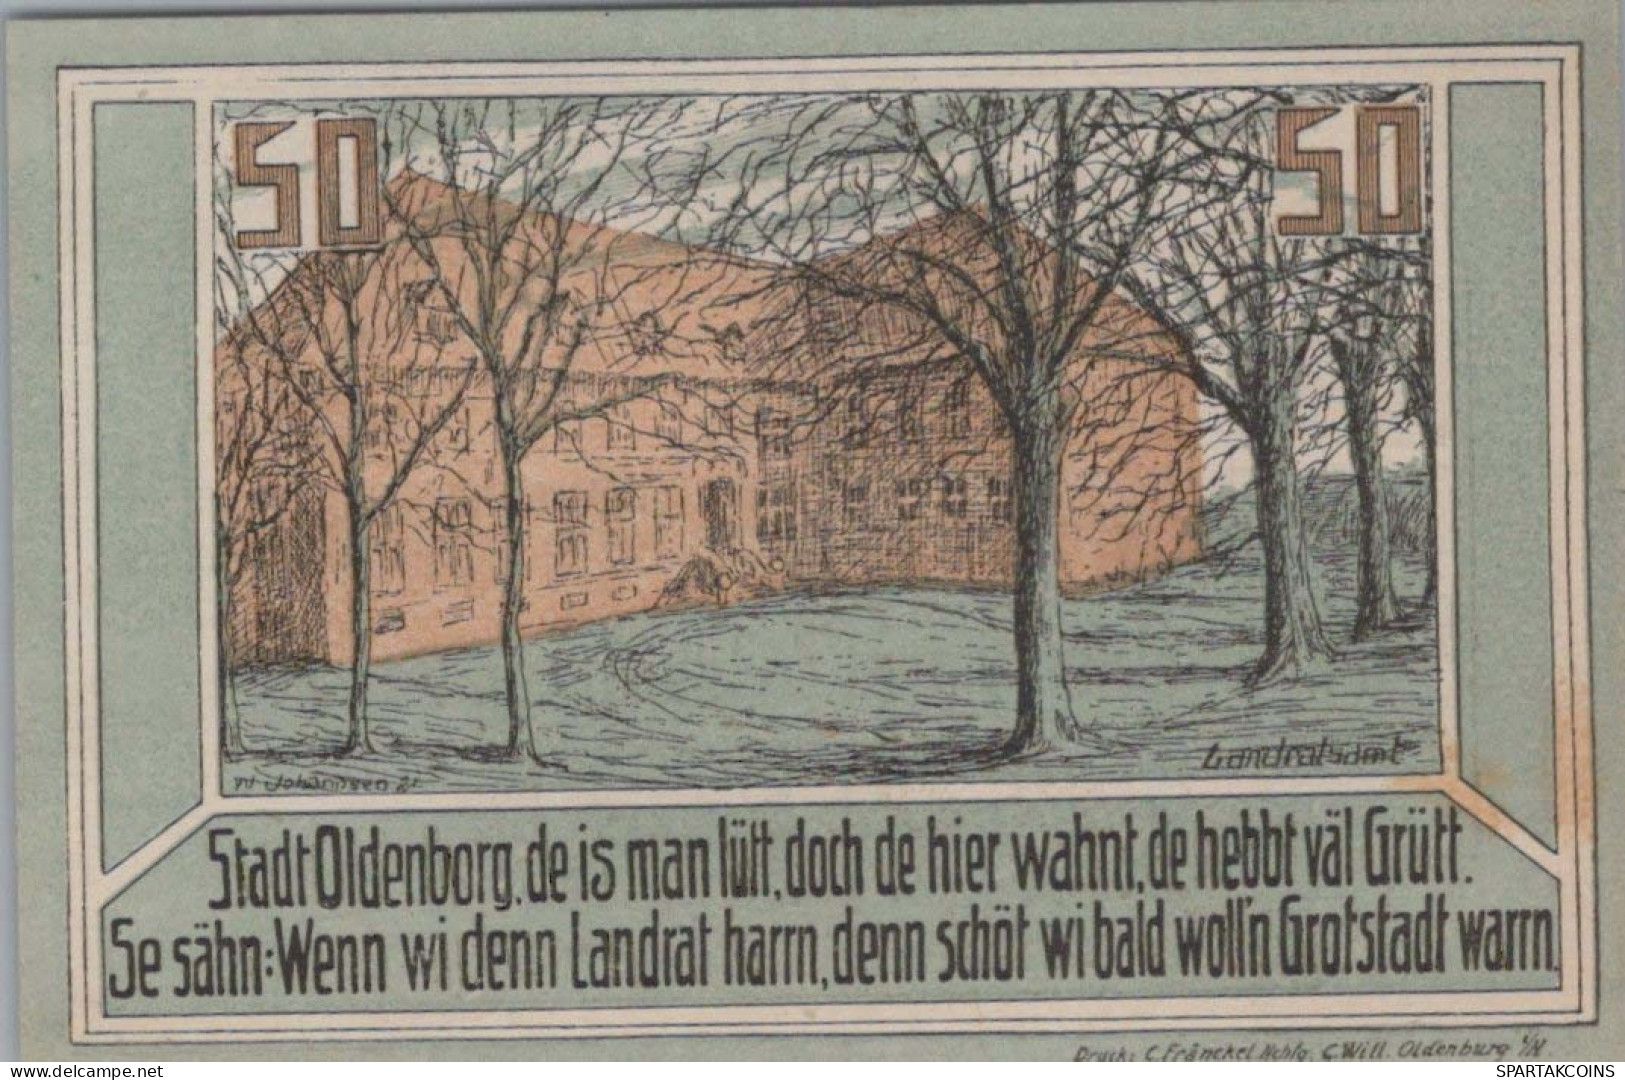 50 PFENNIG 1922 Stadt OLDENBURG IN HOLSTEIN Schleswig-Holstein DEUTSCHLAND #PF429 - [11] Local Banknote Issues